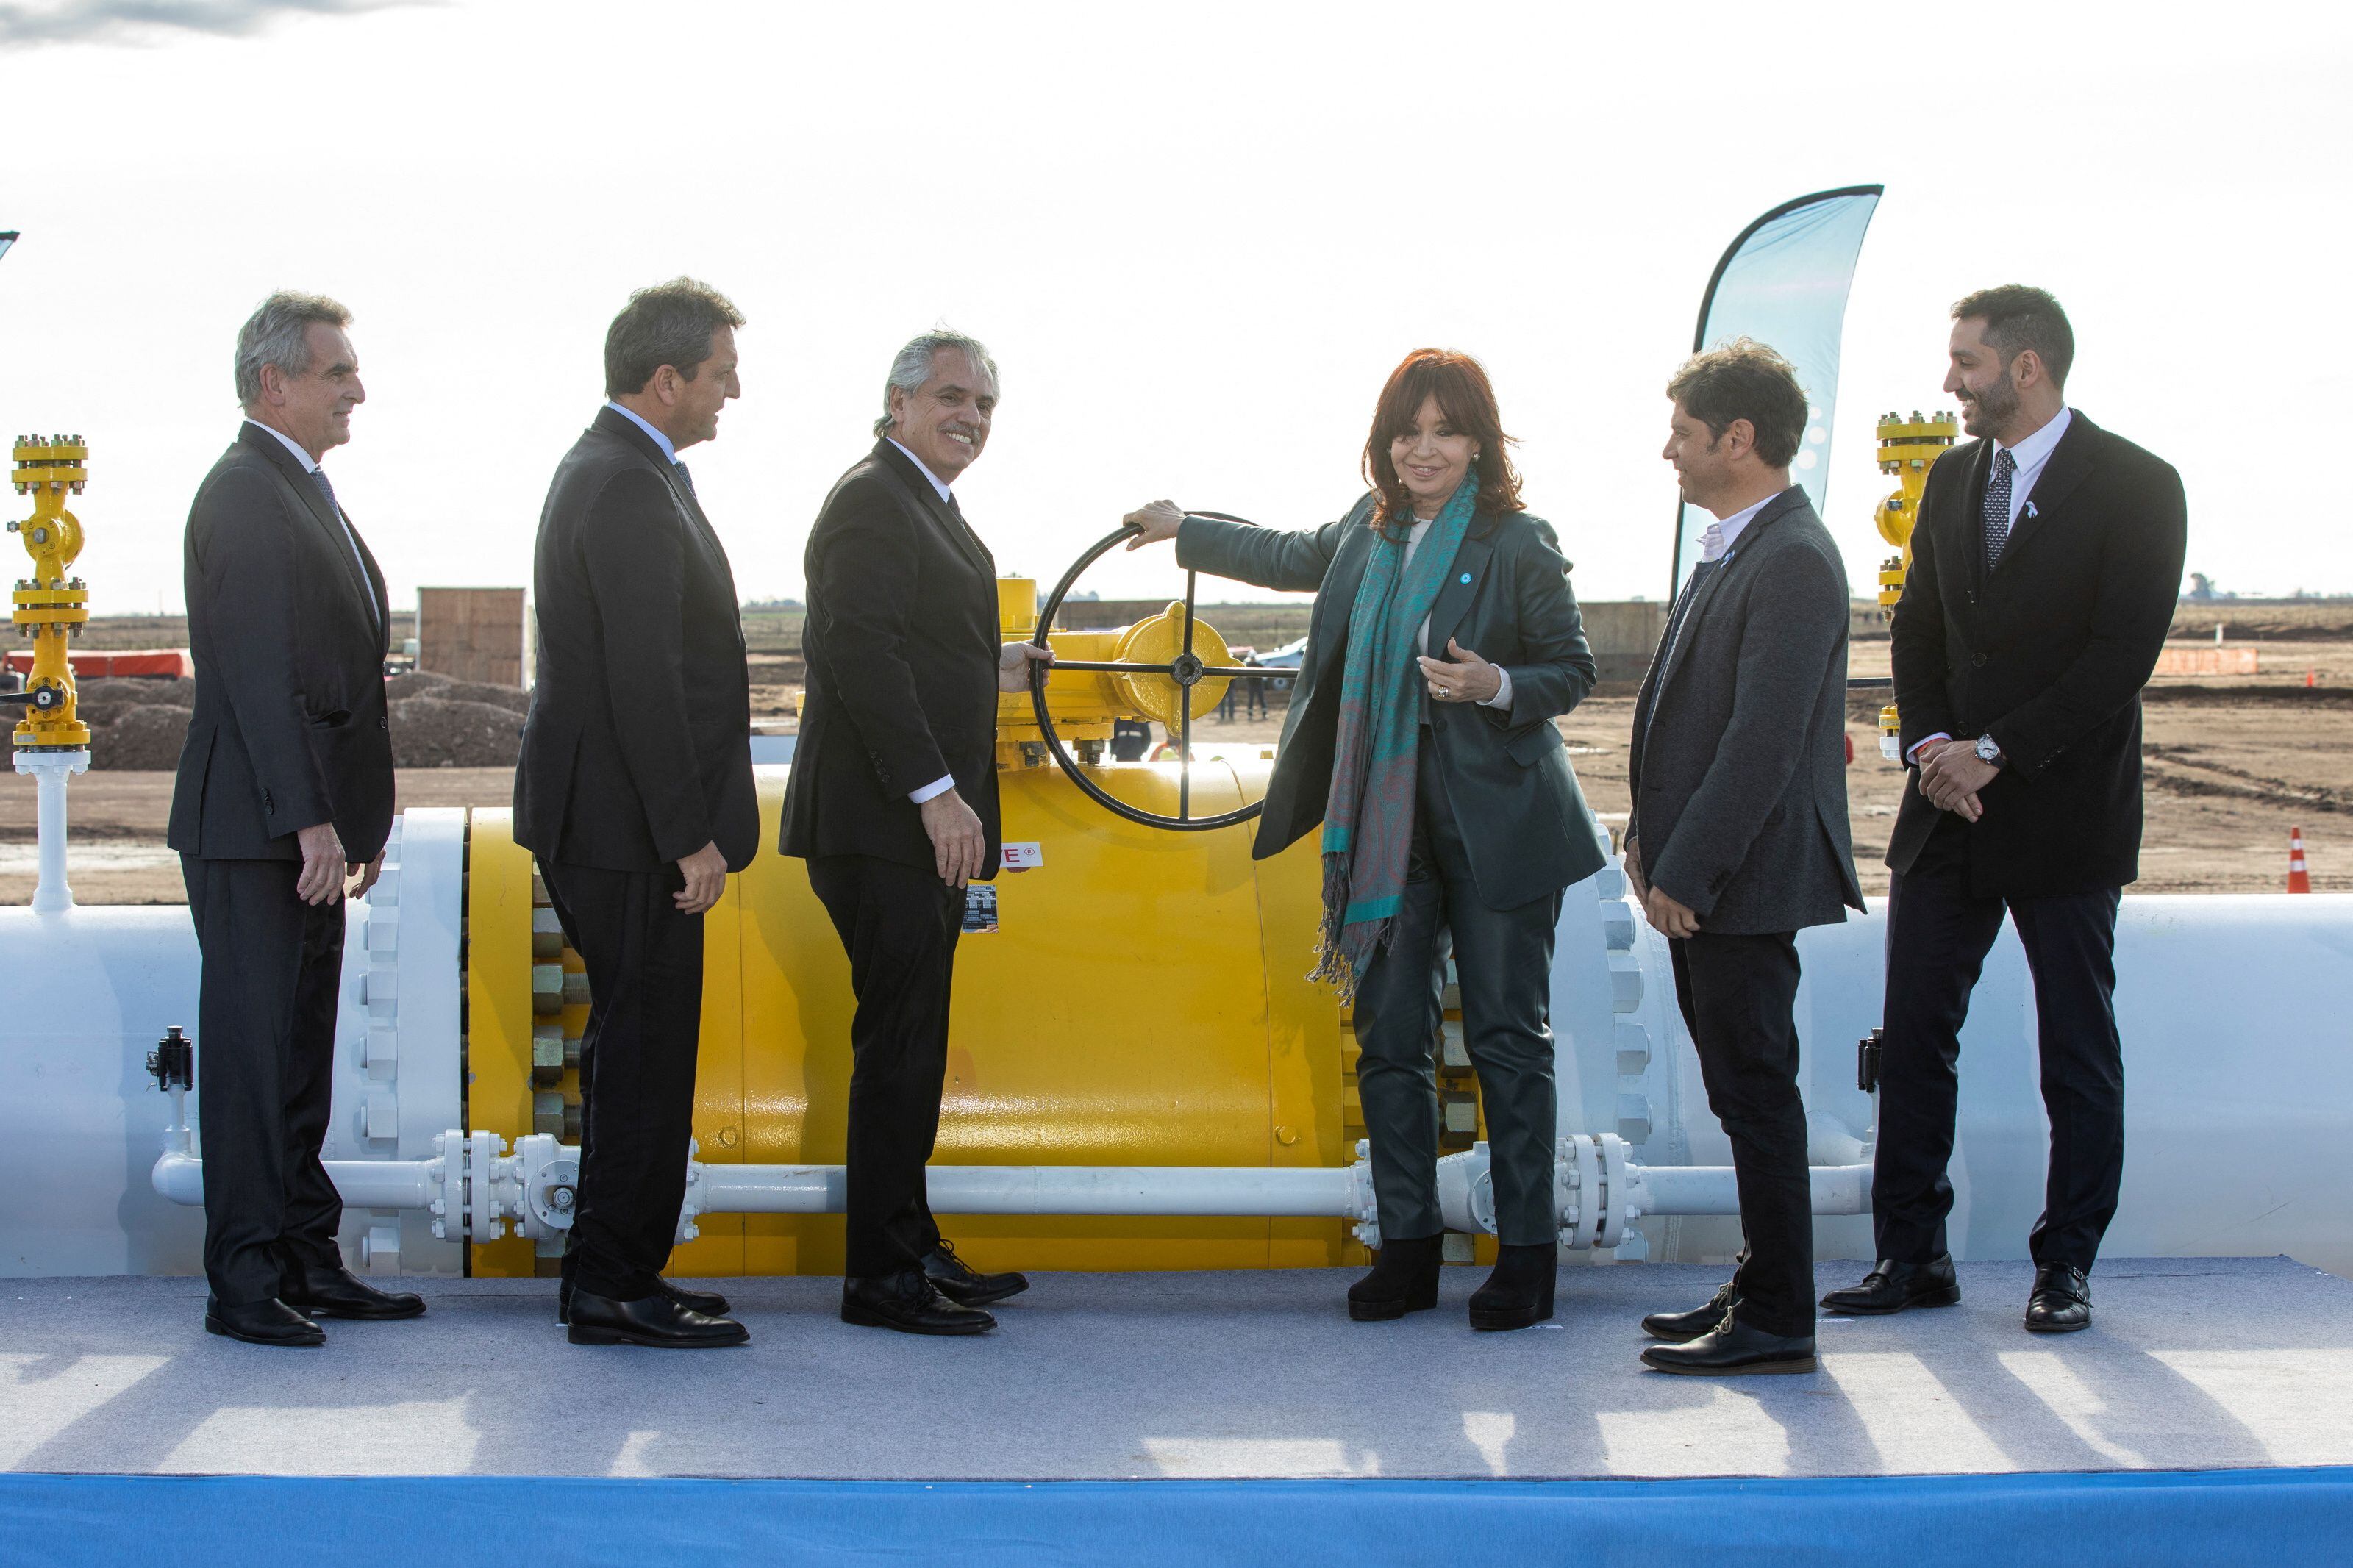 Gérez, último del lado derecho de la foto, en el acto de inauguración del Gasoducto Kirchner que, según afirmó, "ya se repagó" 